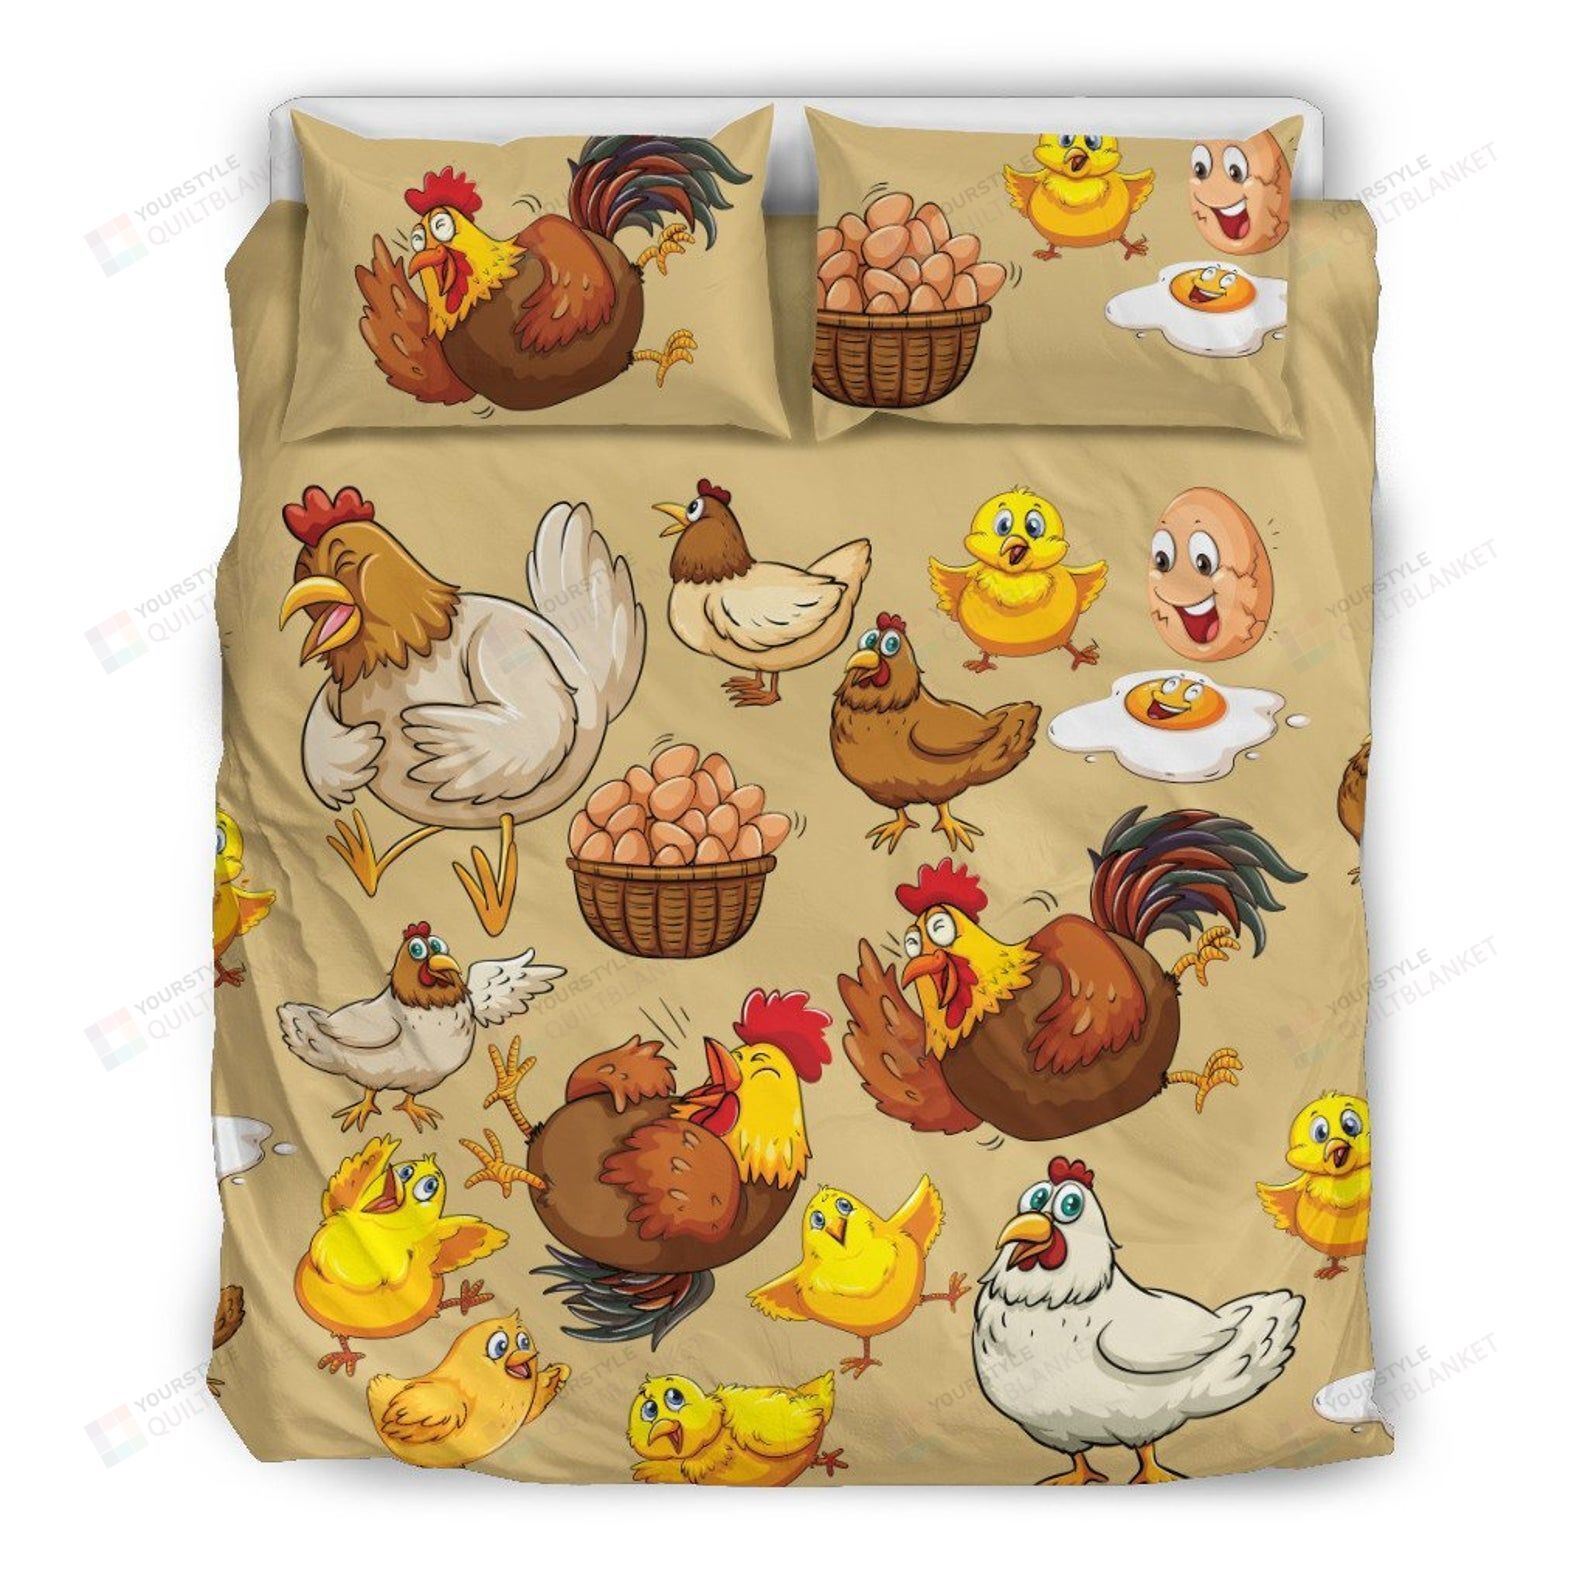 Funny Chicken & Egg Bedding Set Bed Sheets Spread Comforter Duvet Cover Bedding Sets